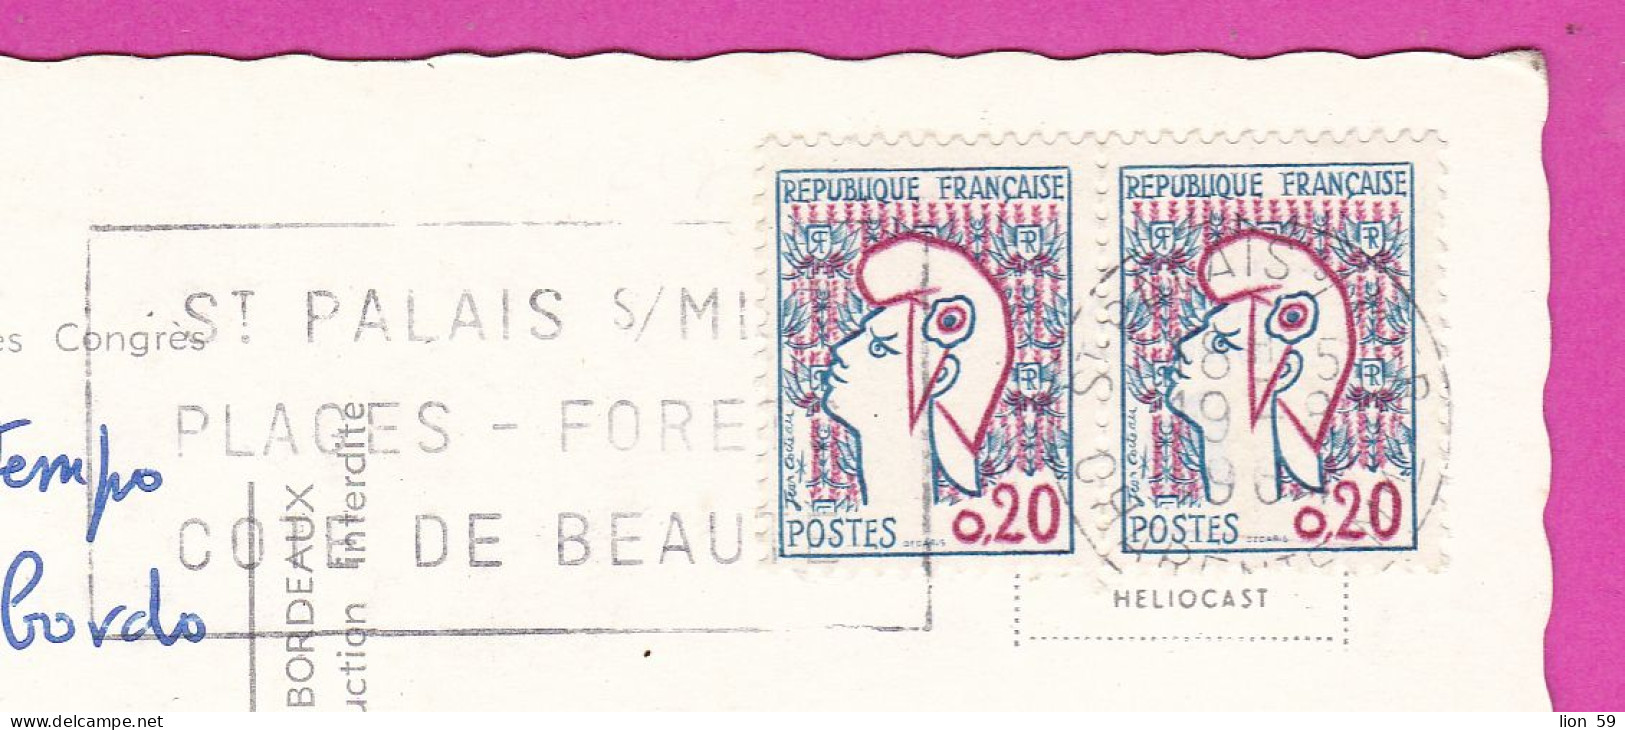 294106 / France - ROYAN Palais Des Congres PC 1968 USED 0.20+0.20 Fr. Marianne De Cocteau Flamme ST PALAIS S/MER PLAGES - Lettres & Documents